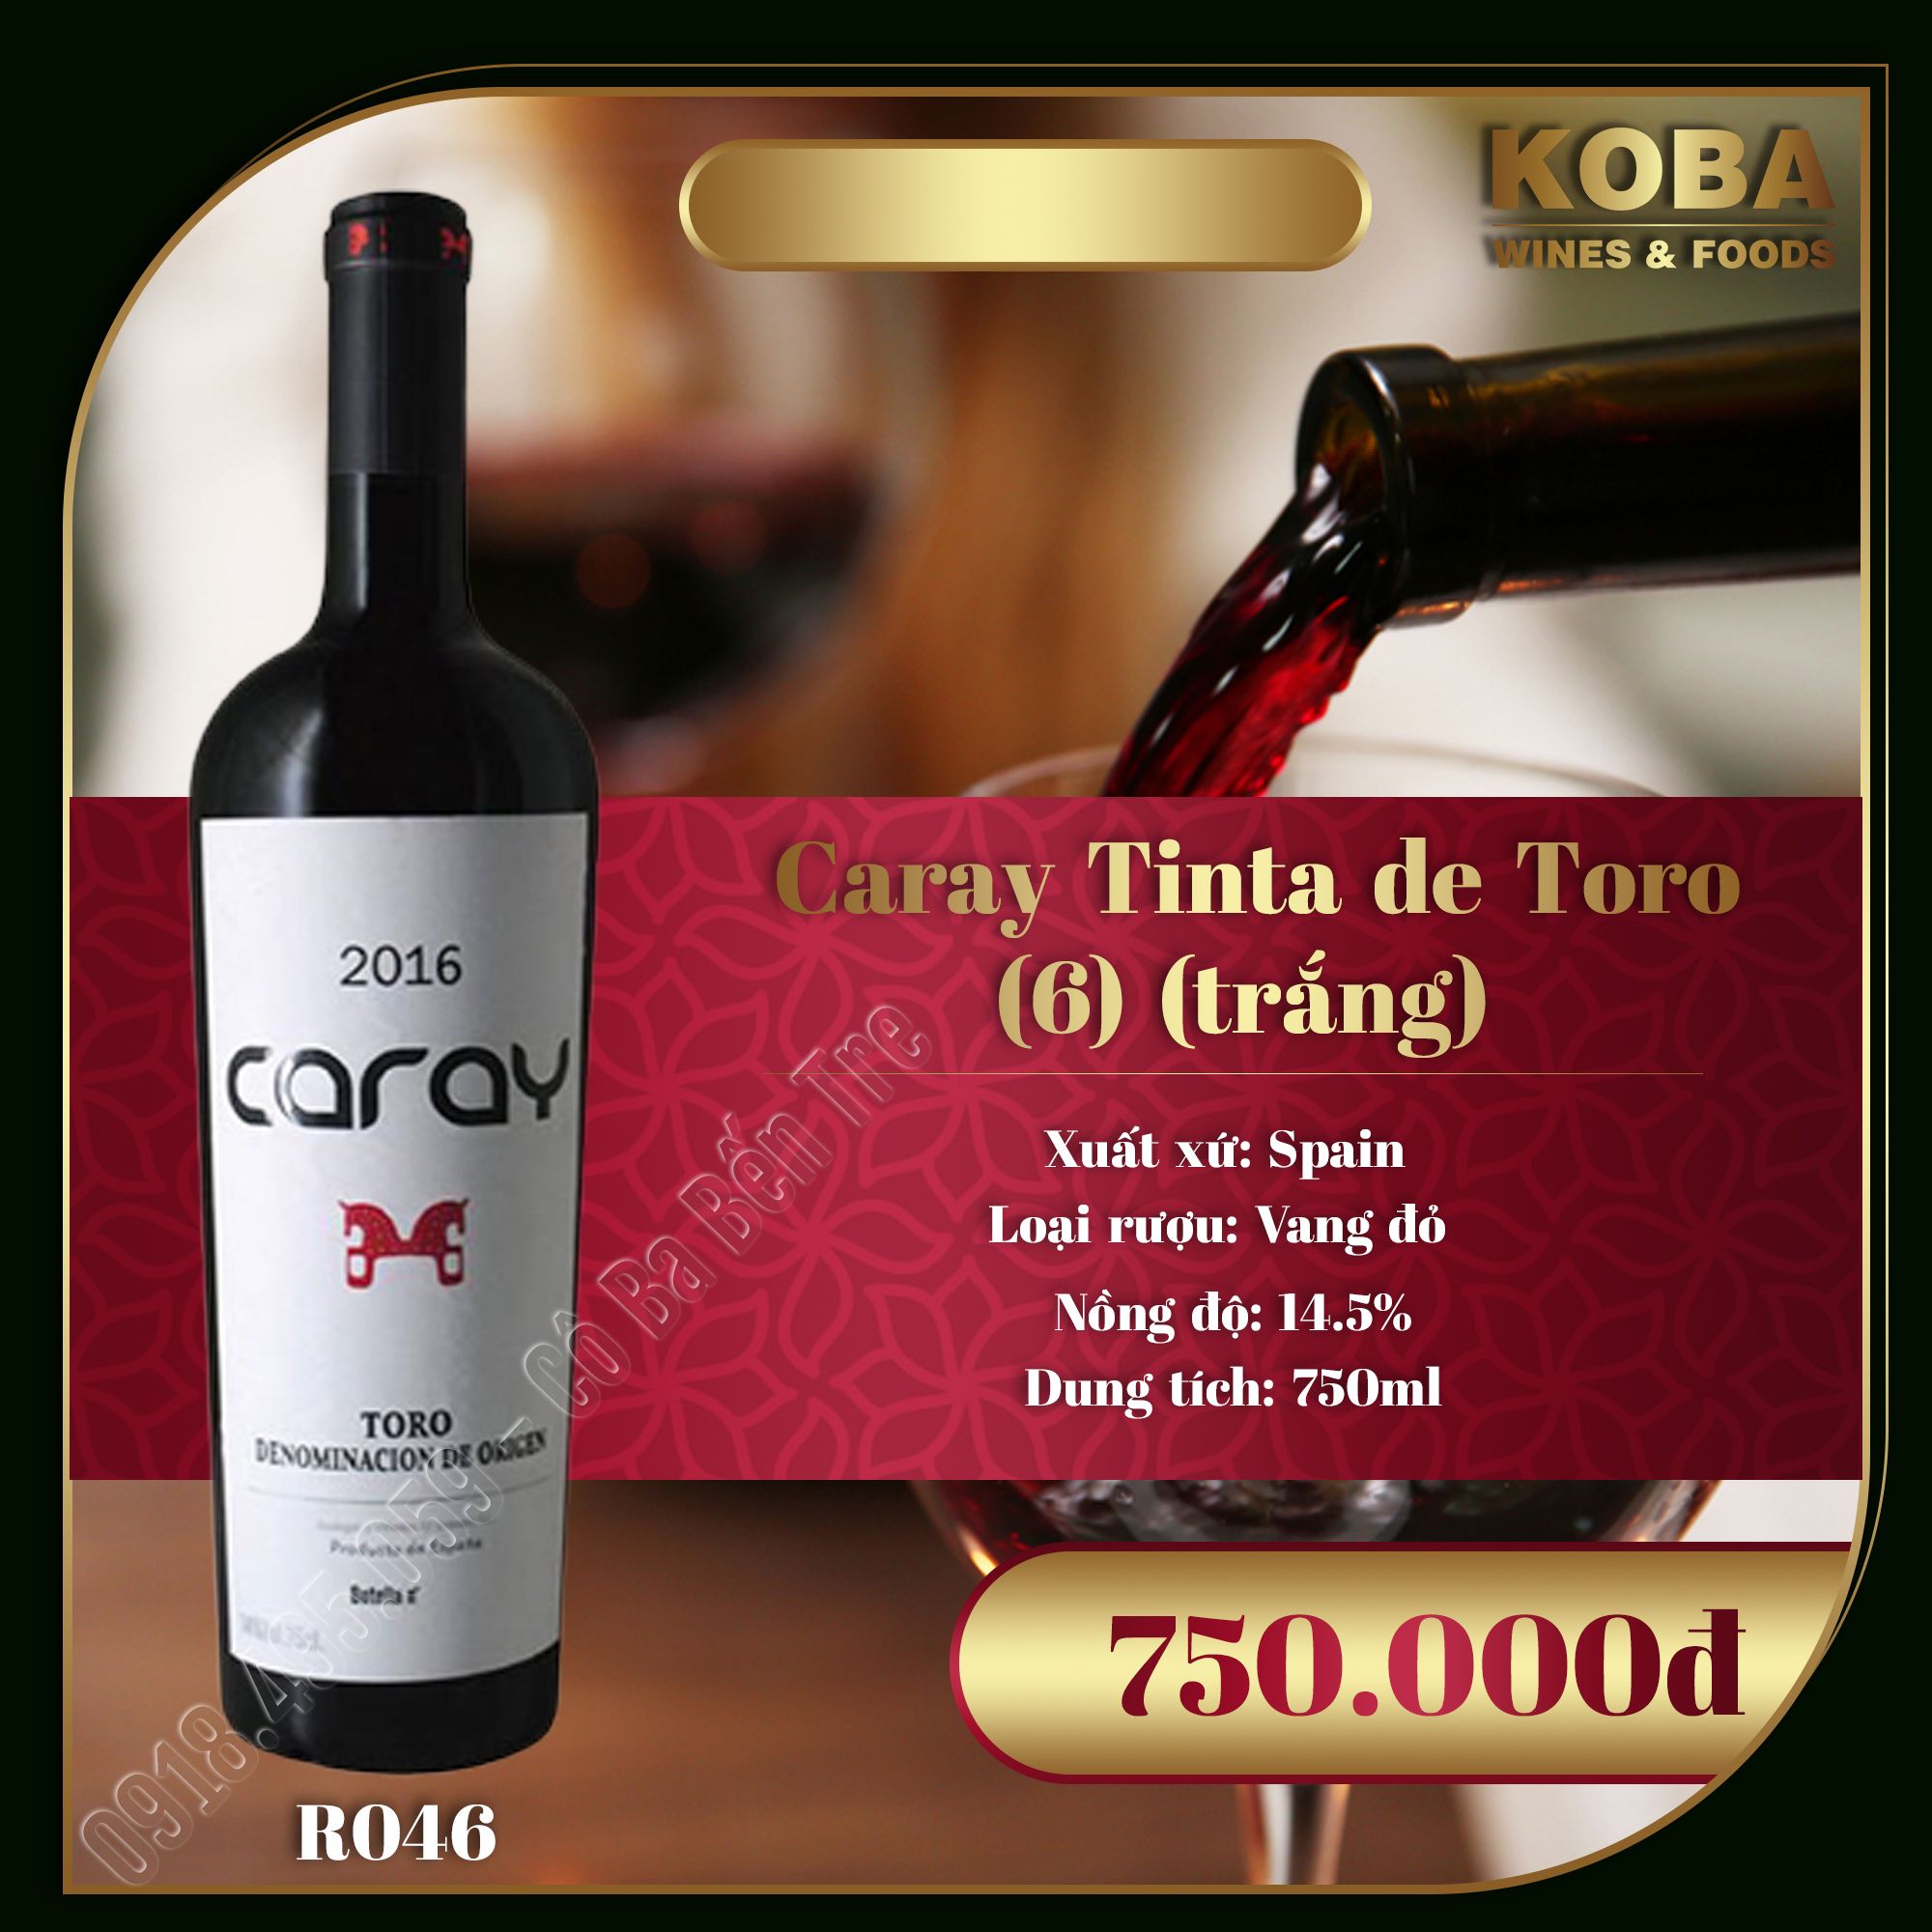 Rượu Vang Đỏ Spain - Caray Tinta de Toro 2016 (6) (Trắng) - 14.5 độ